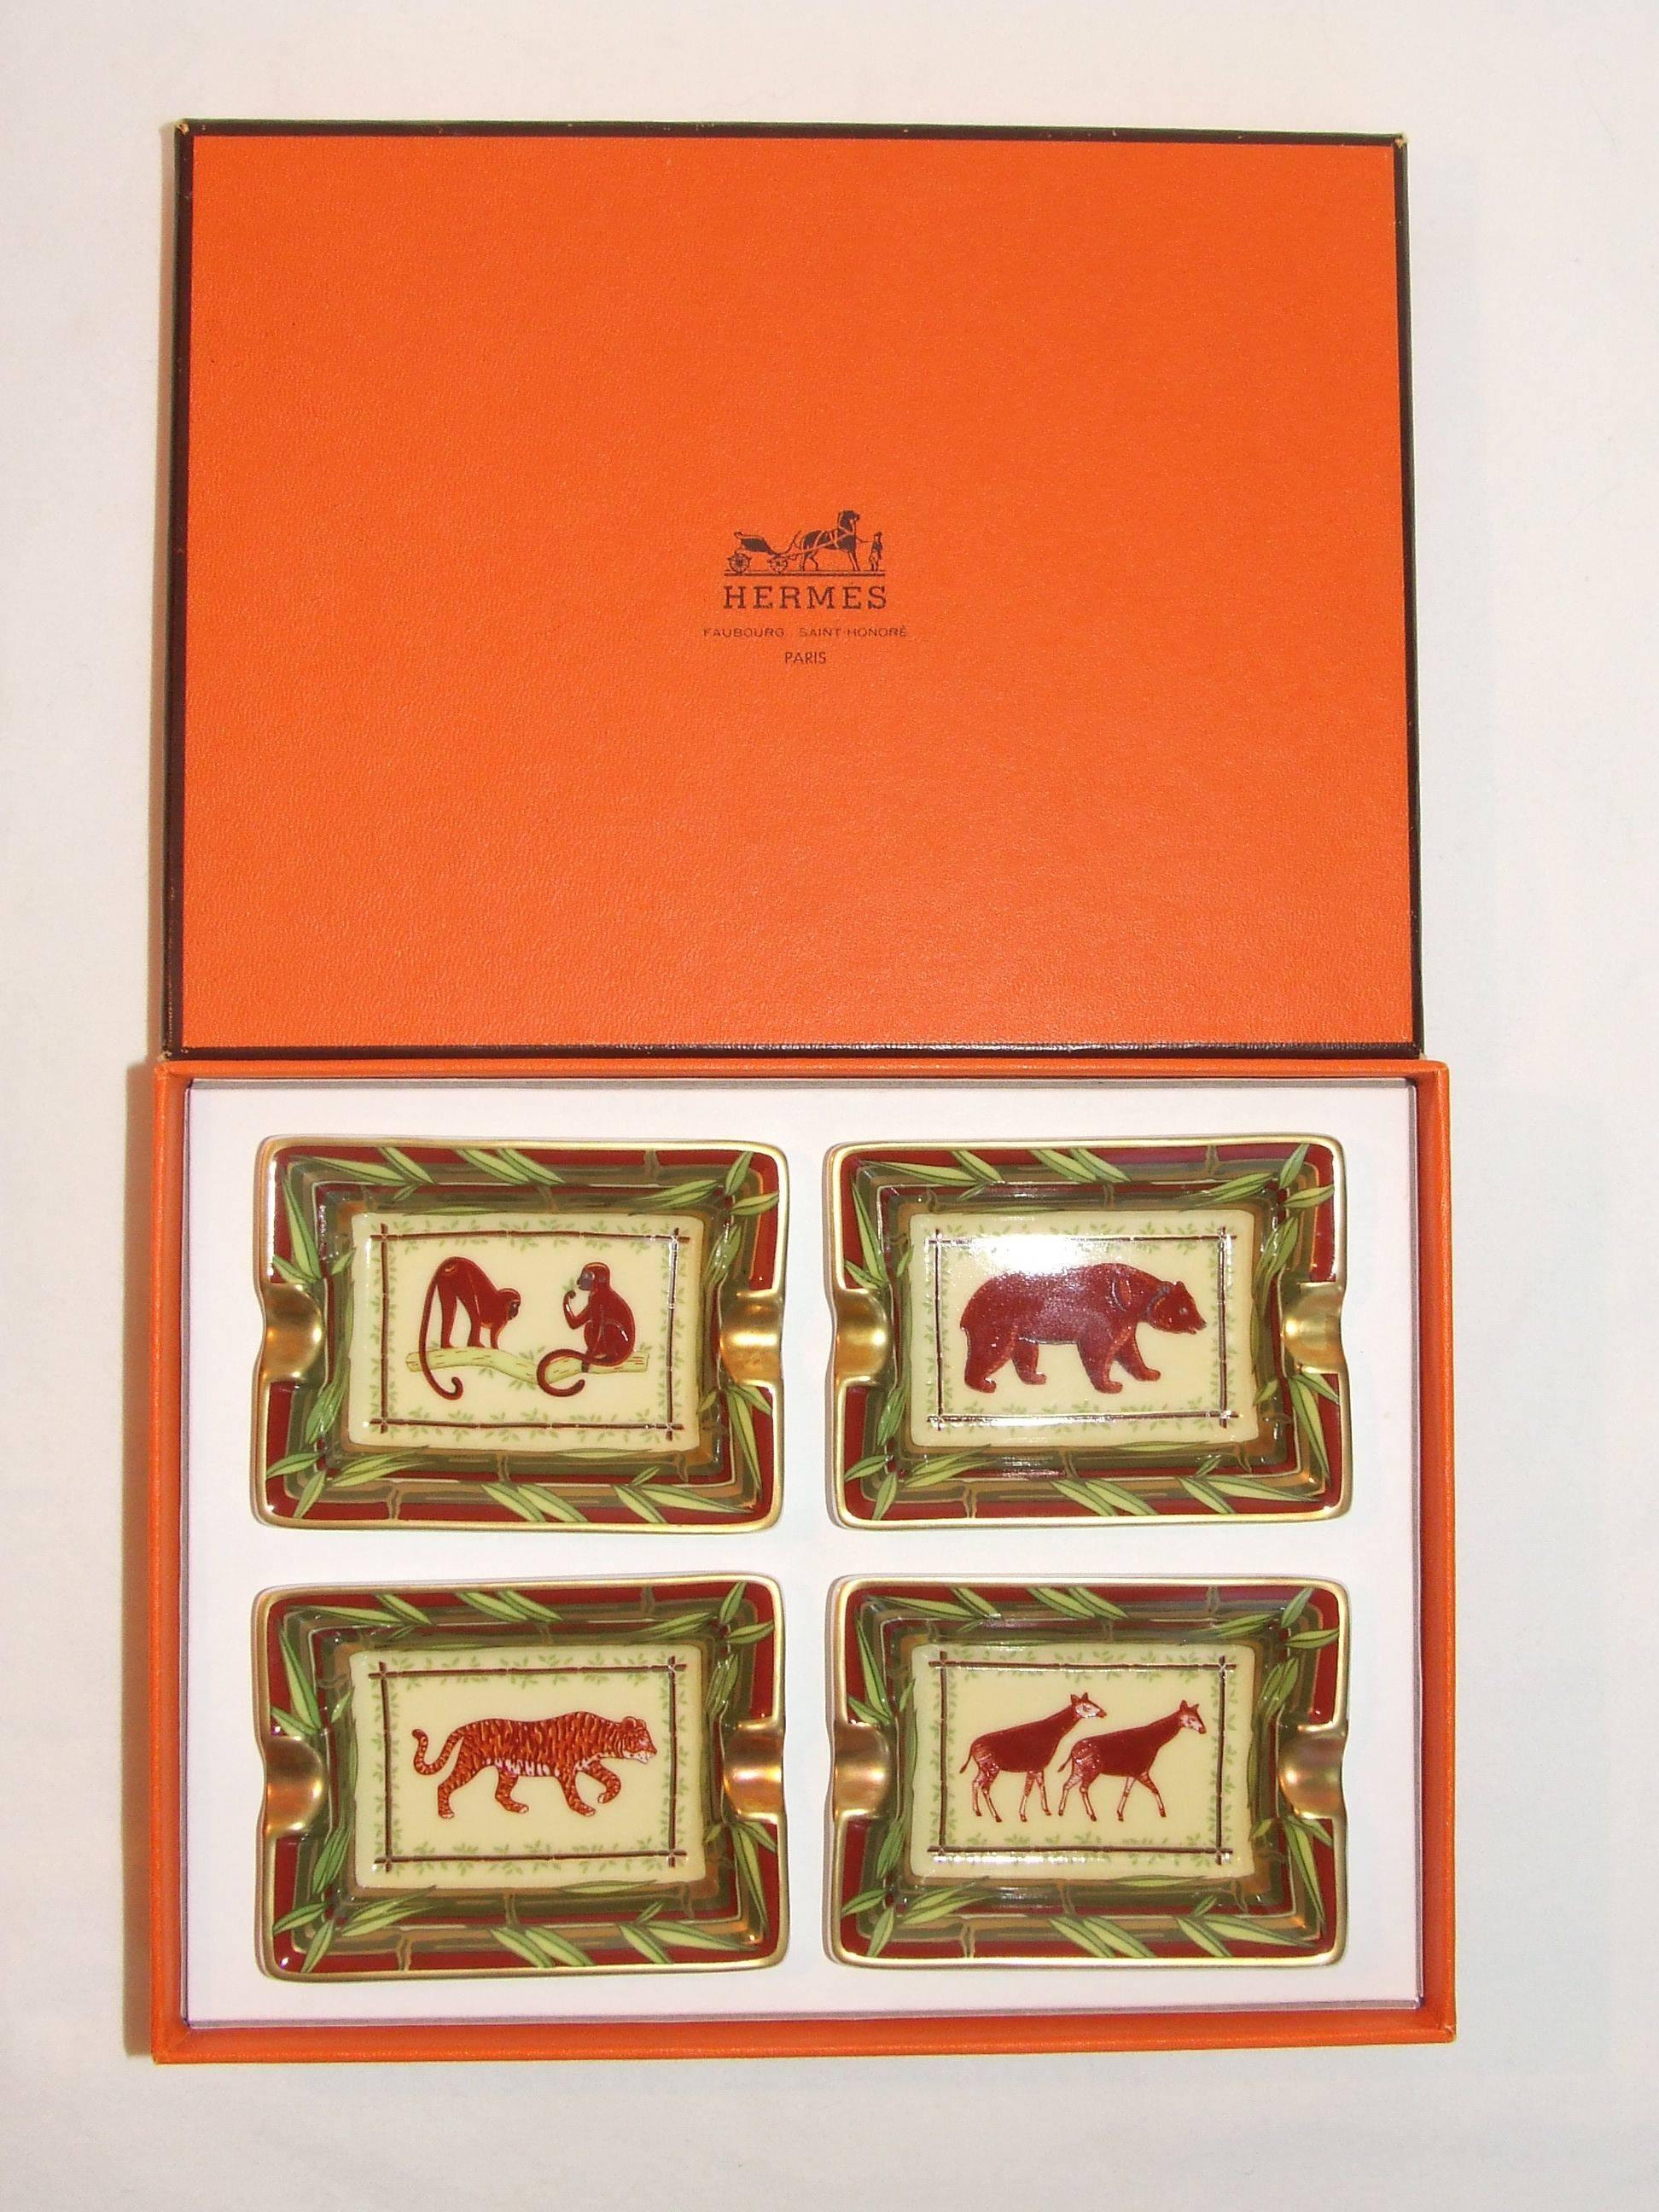 Women's or Men's Hermes 4 Small Printed Porcelain Ashtray Change Tray Monkey Bear Tiger Giraffe